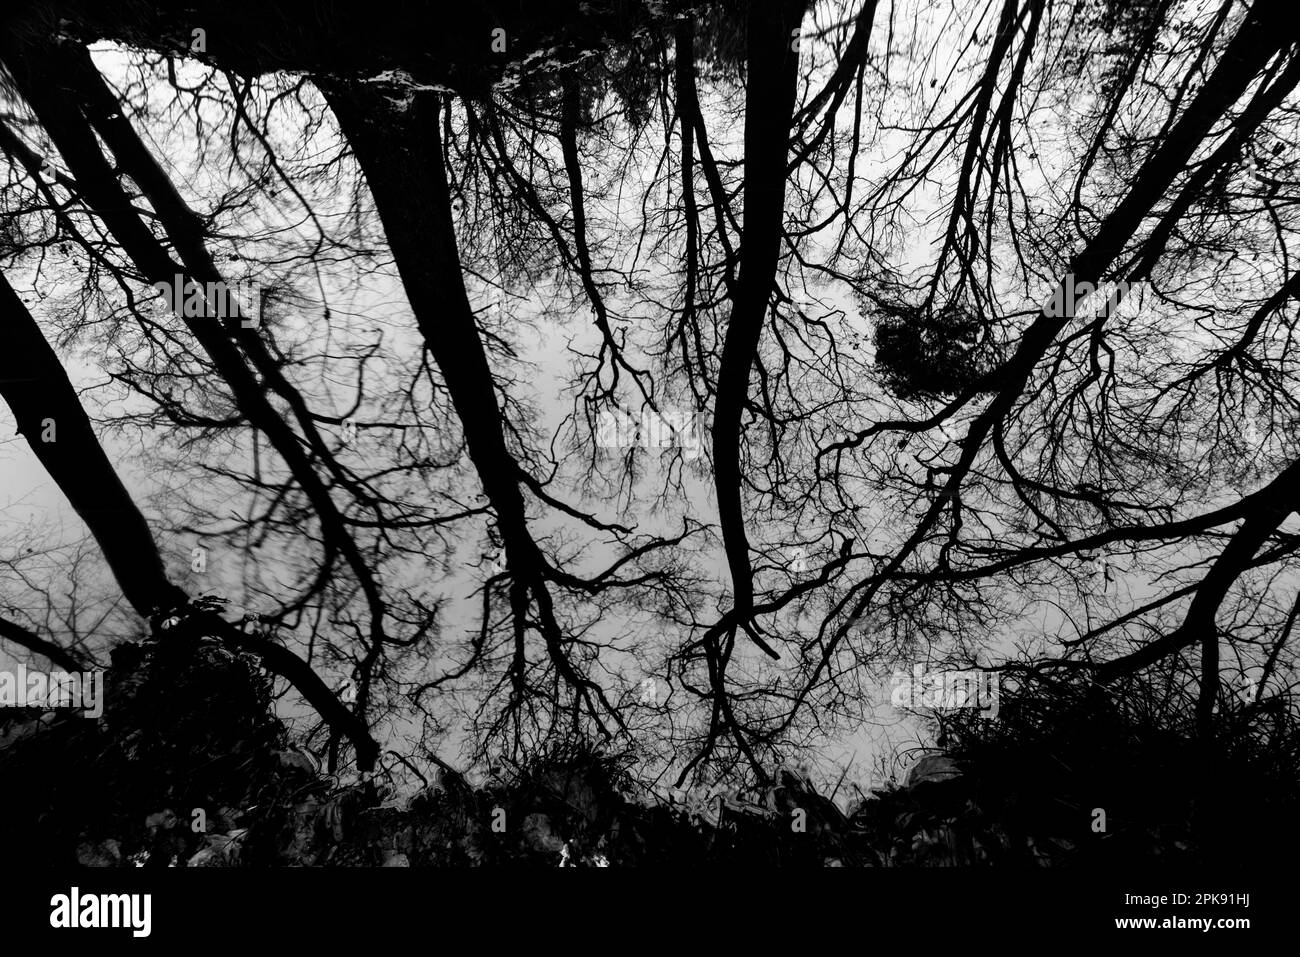 Réflexion sur l'eau à la surface d'une petite rivière dans la forêt, photographie en noir et blanc Banque D'Images